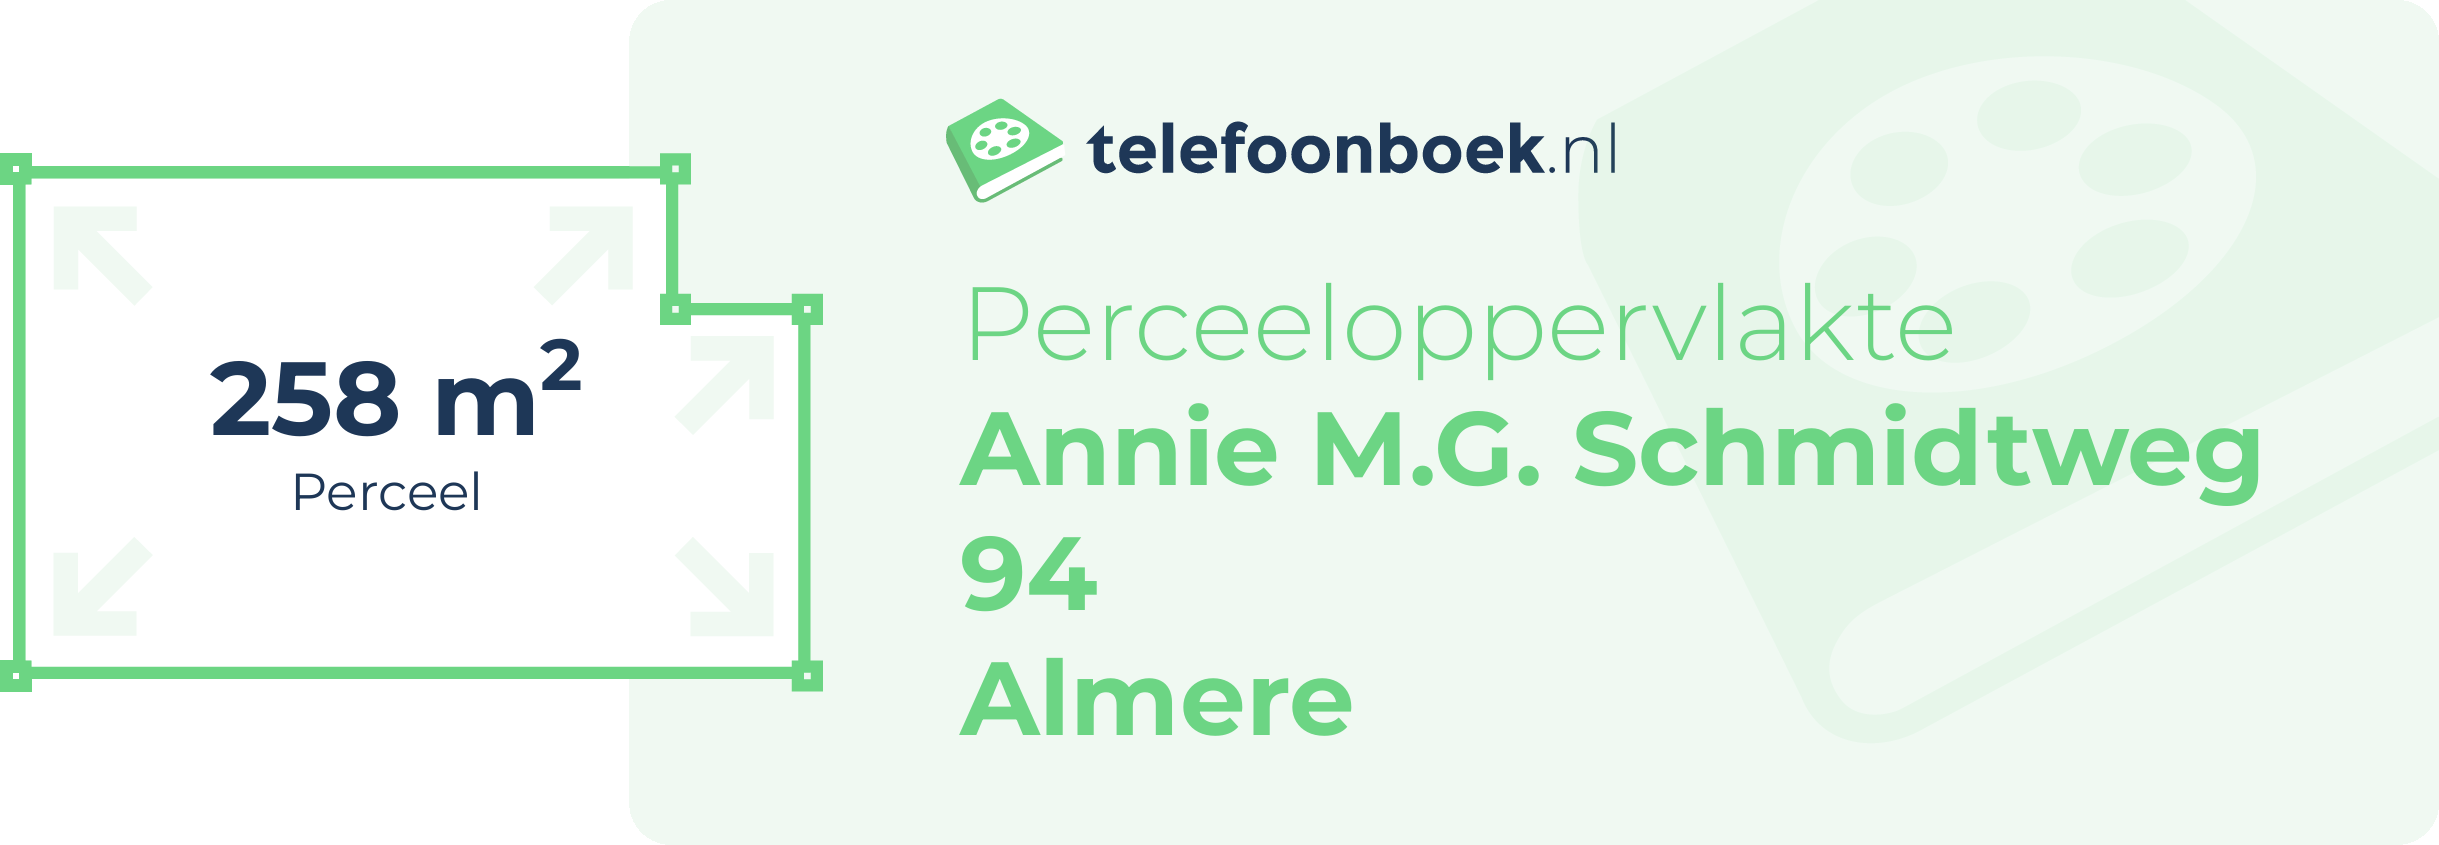 Perceeloppervlakte Annie M.G. Schmidtweg 94 Almere